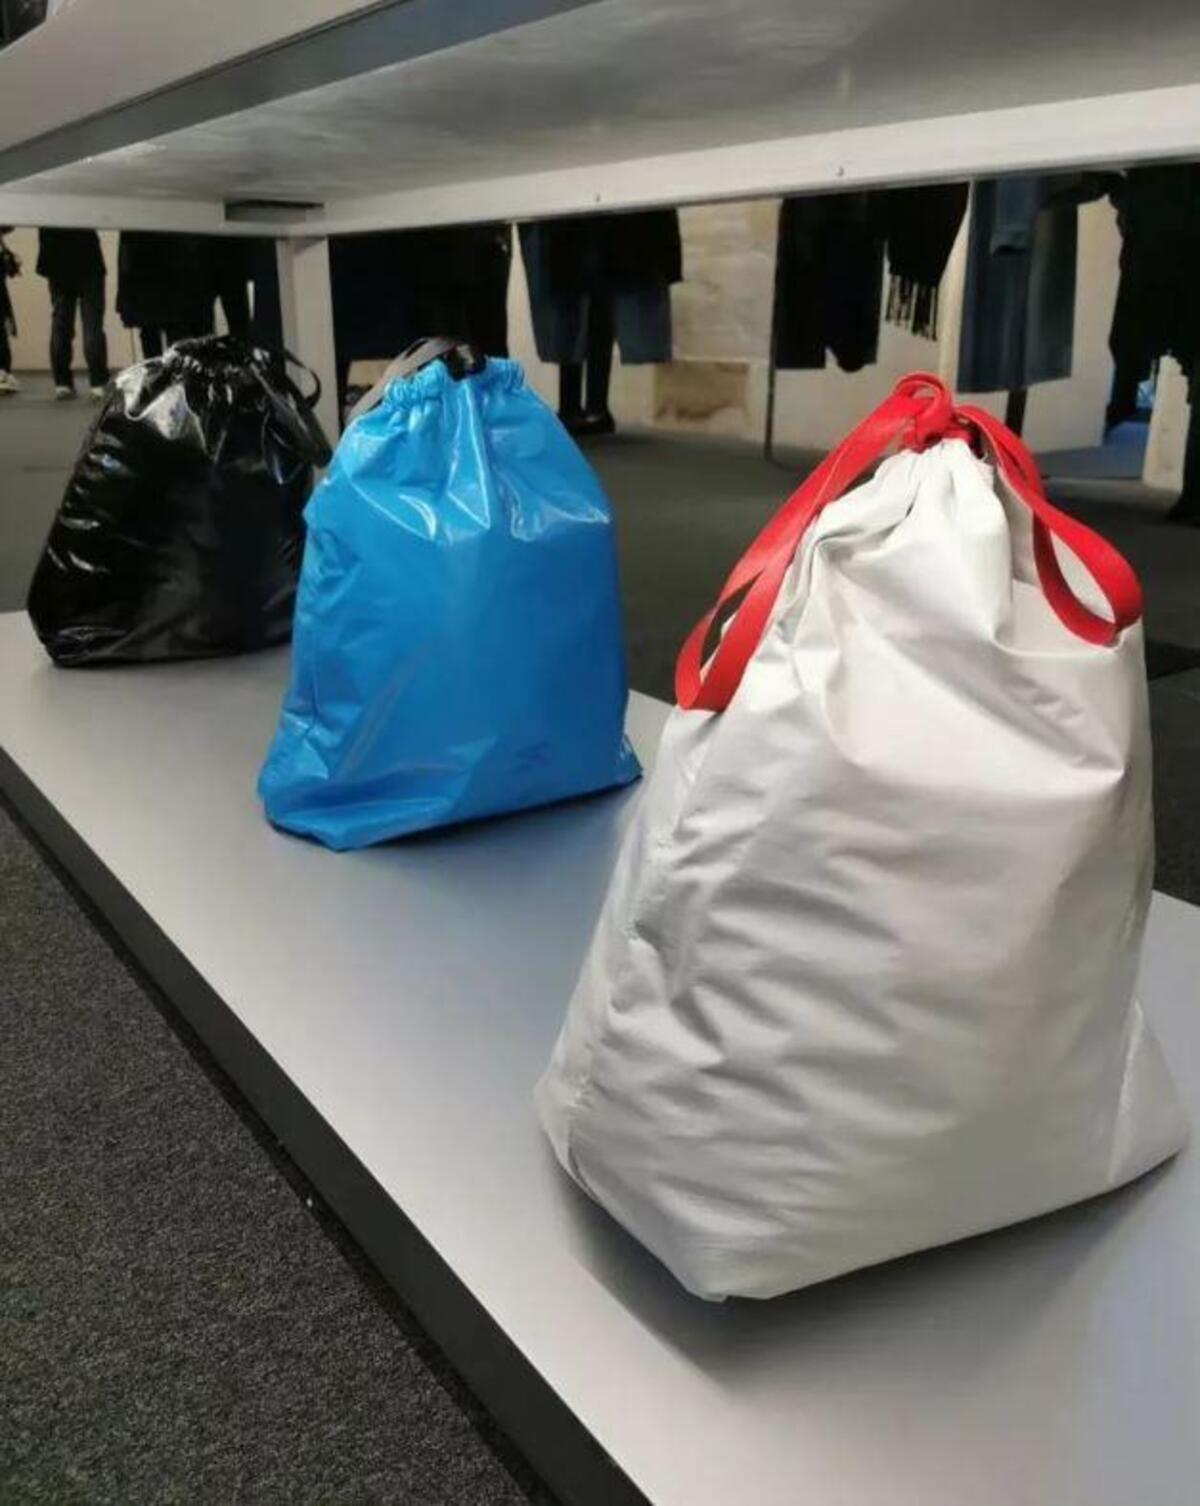 Bolsa inspirada em saco de lixo é vendida por mais de R$ 9 mil pela Balenciaga - Zoeira - Diário do Nordeste